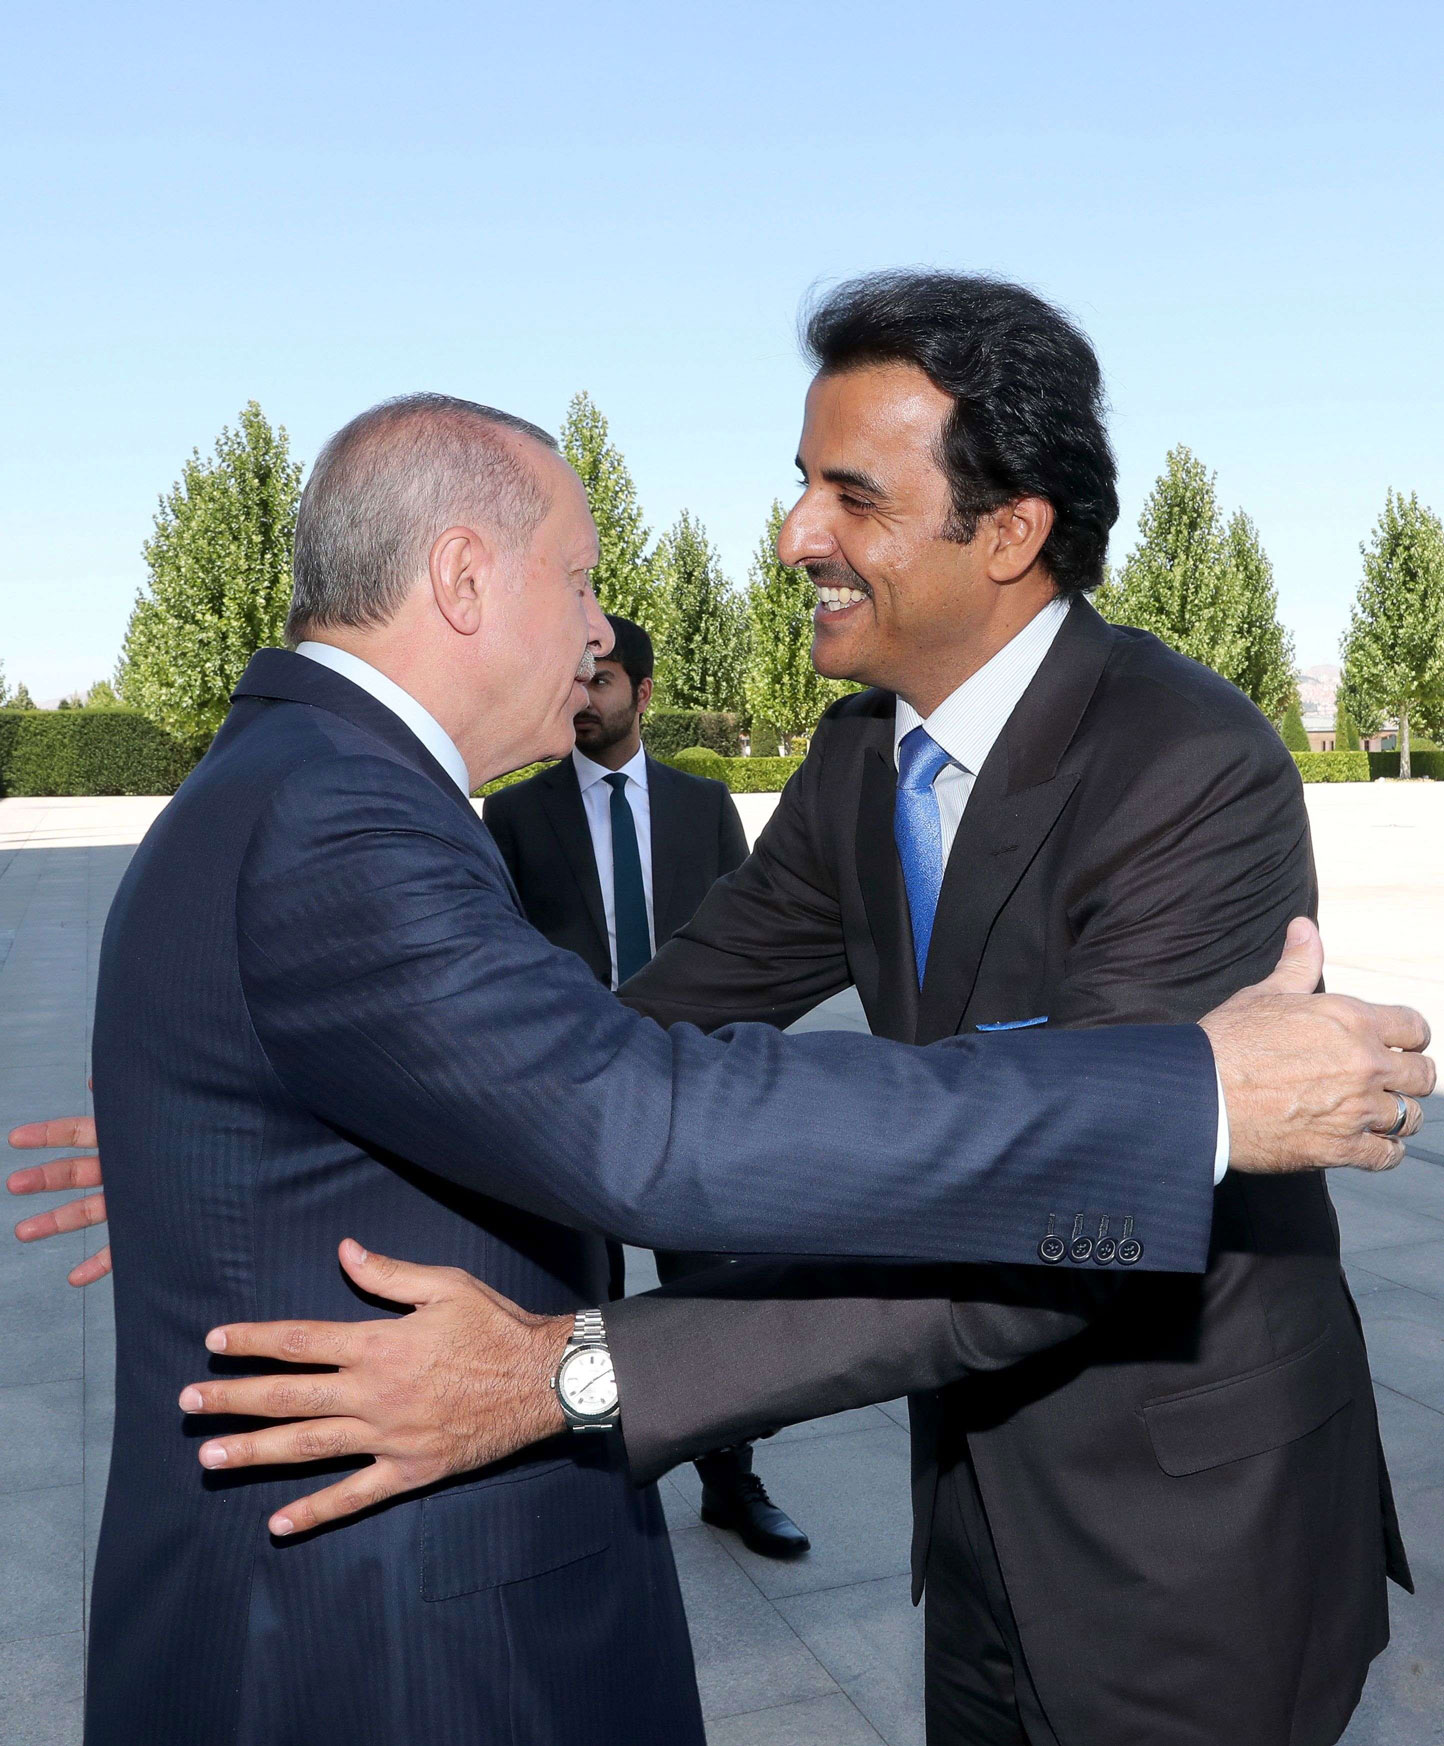 تركيا وغيران تعاملتا مع أزمة قطر كغنيمة